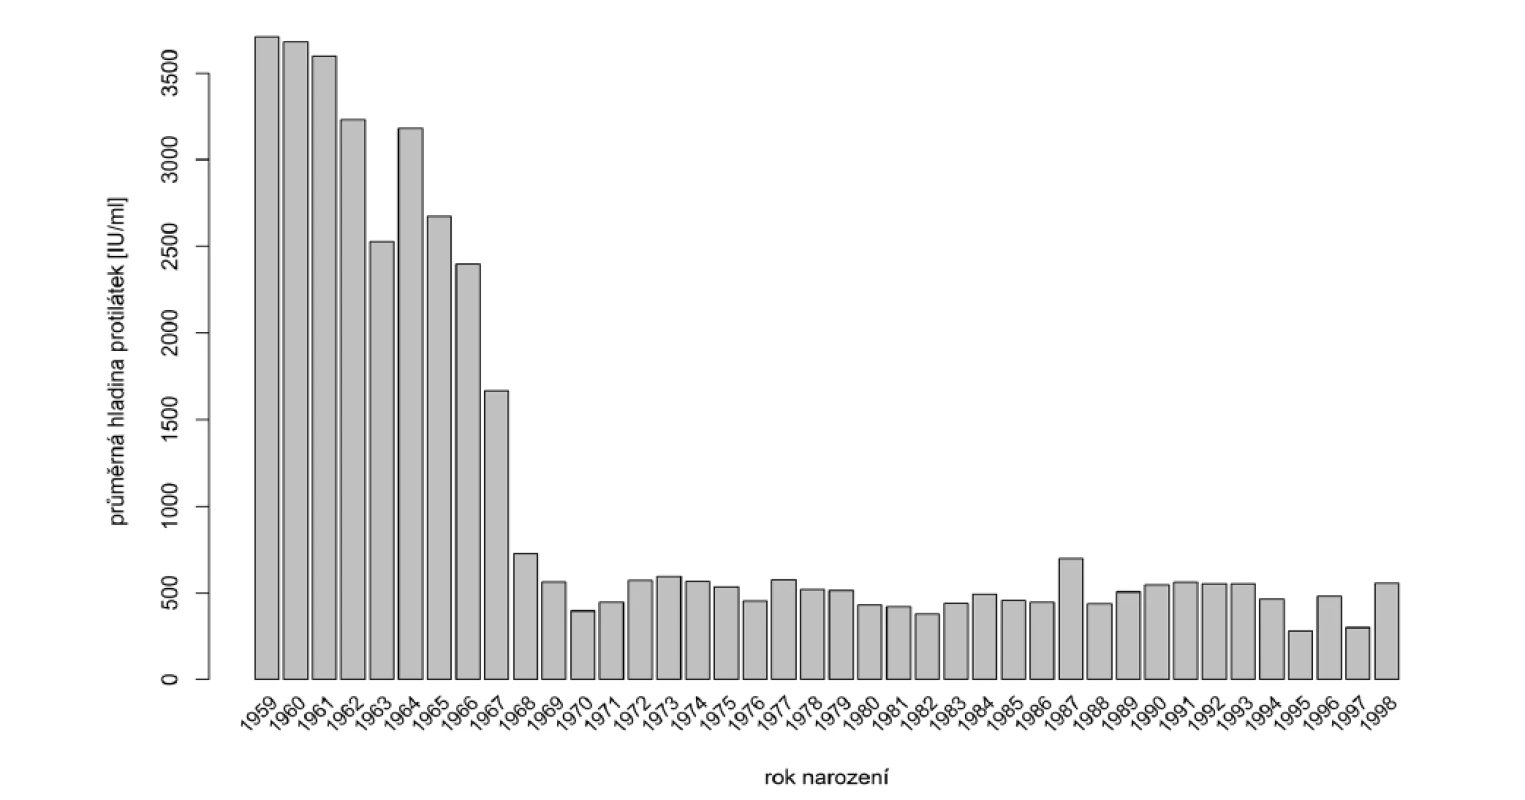 Průměrné hladiny protilátek podle roku narození<br>
Figure 2. Average antibody titers by year of birth